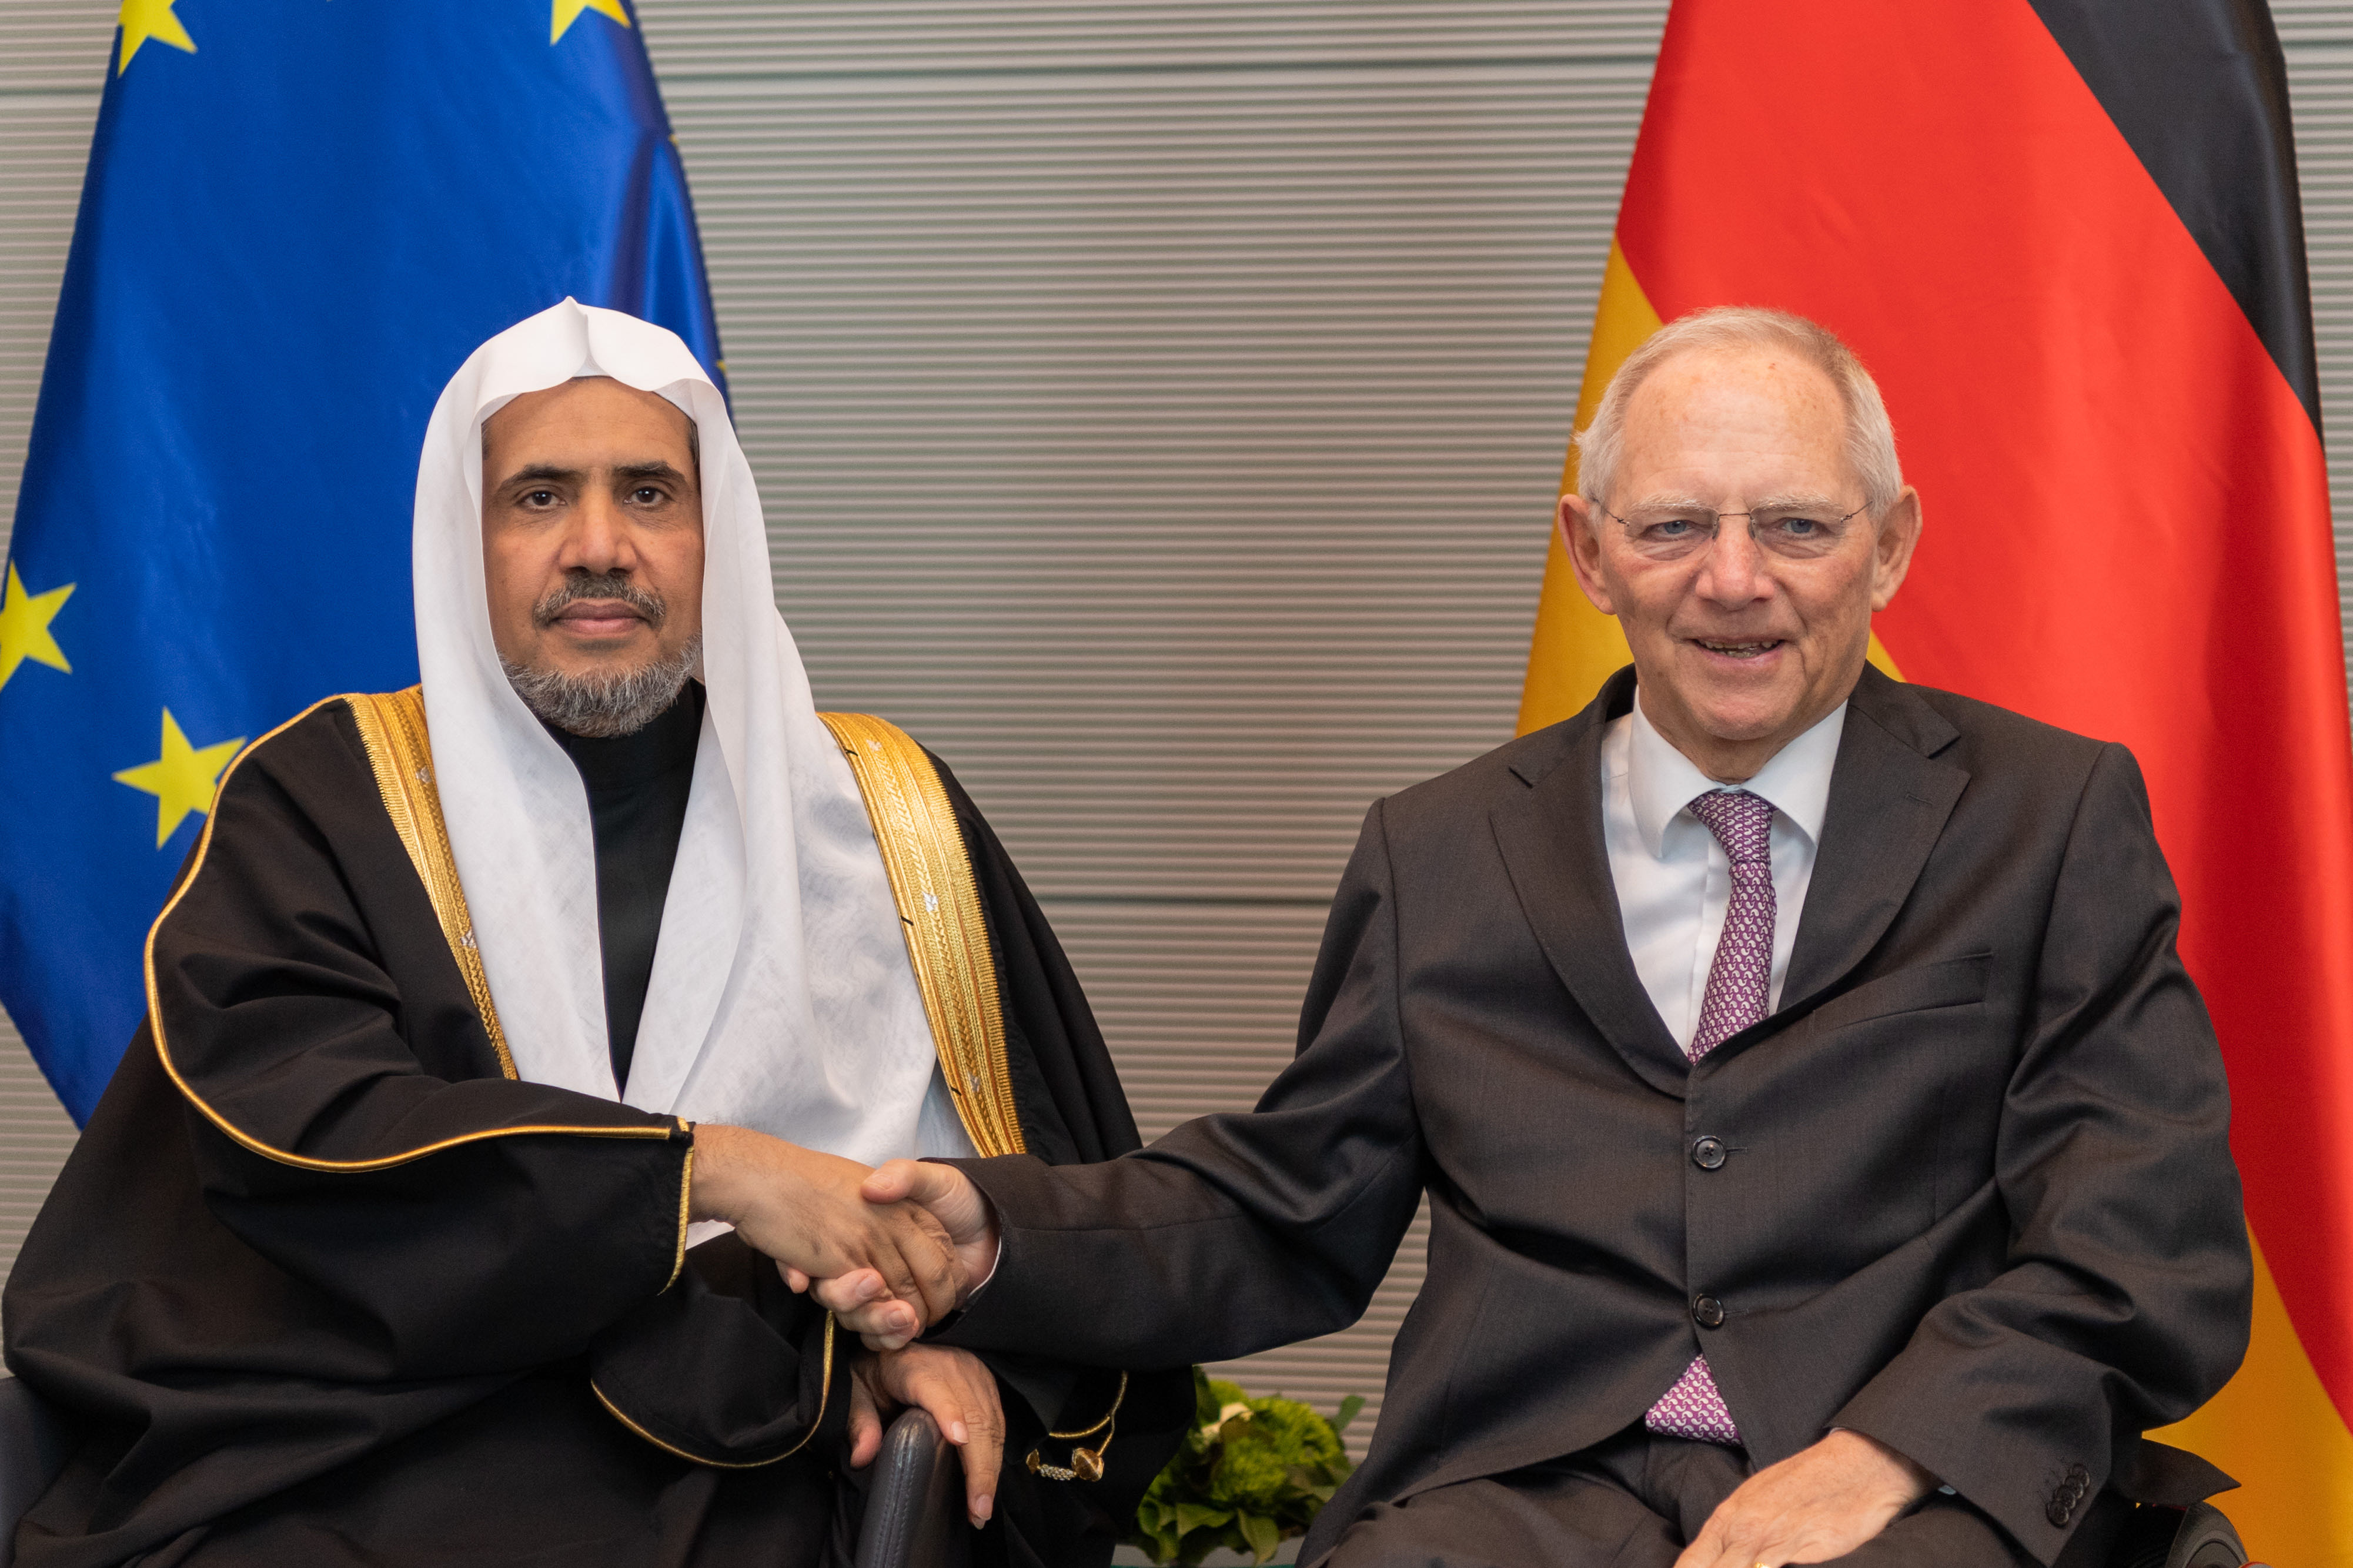 سیکرٹری جنرل عزت مآب شیخ ڈاکٹر محمد العیسی نے برلن میں جرمن پارلیمنٹ میں، اسپیکر جناب وولفگانگ شوئبلے سے ملاقات کی